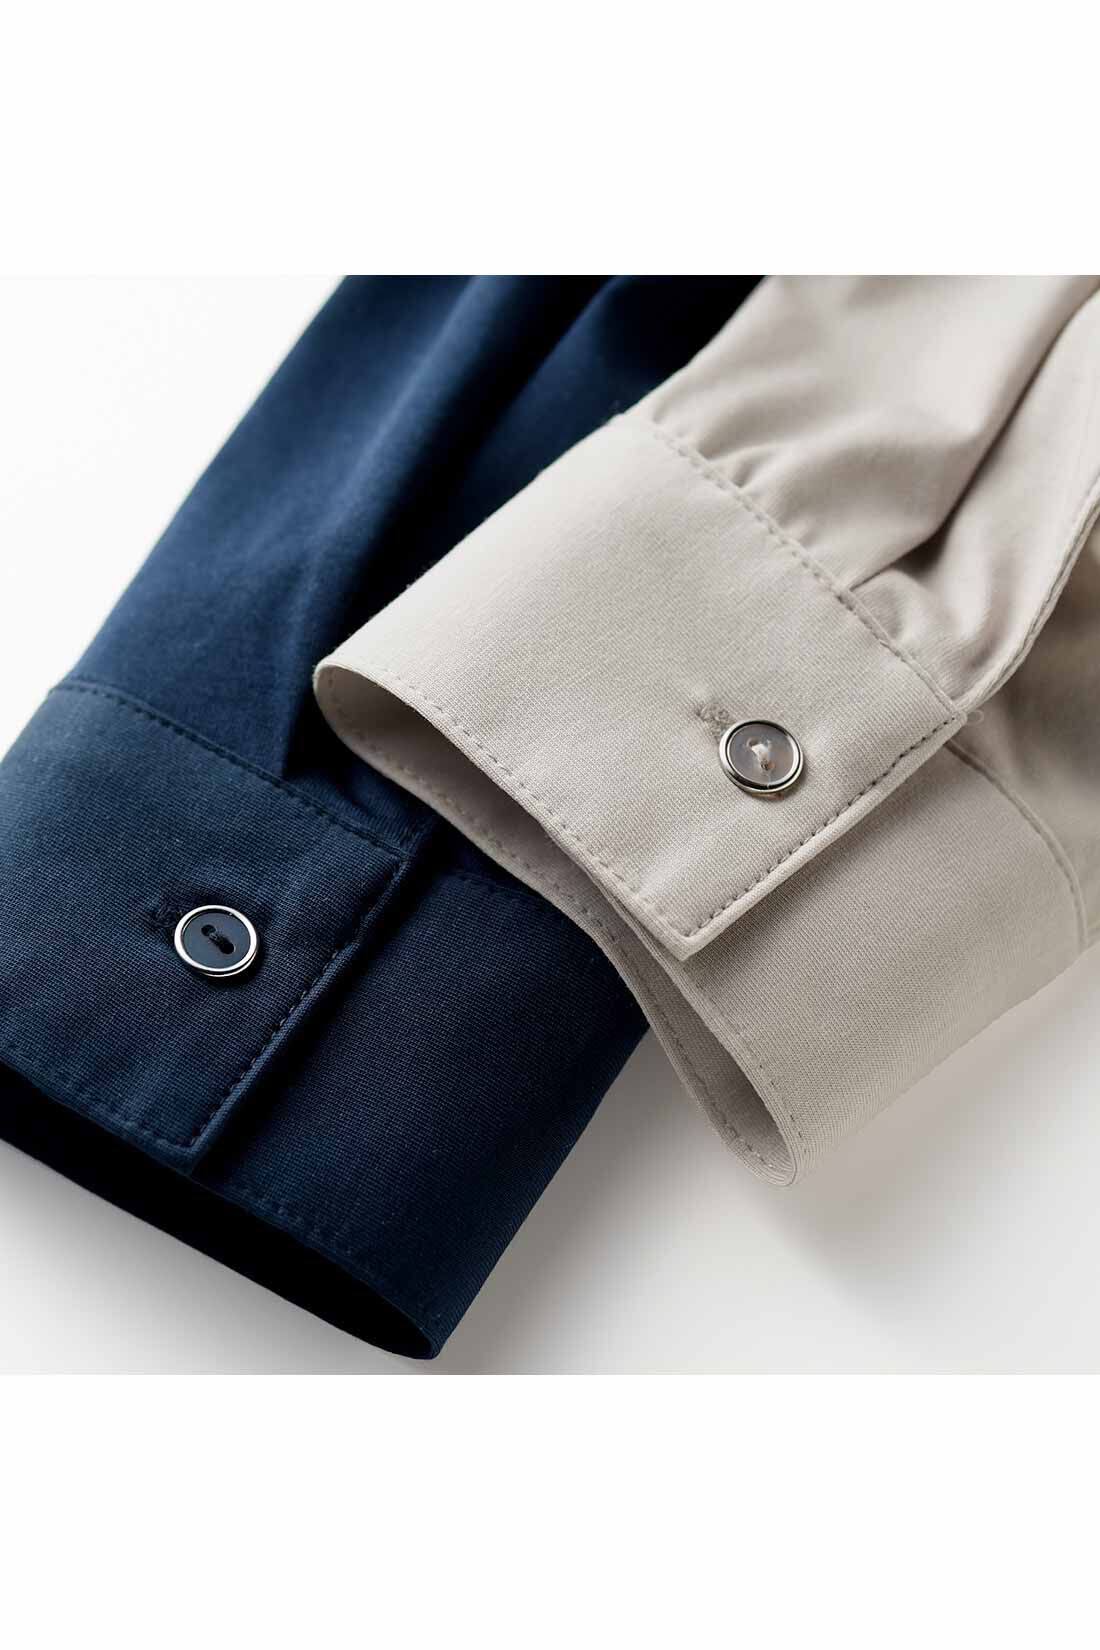 IEDIT[イディット]　らくちんにこなれる すっきり見えデザインのスキッパー美ノビシャツ〈カーキ〉|身生地の色に合わせたボタンは、クール感を高めるシルバーのフレームでリッチな印象。